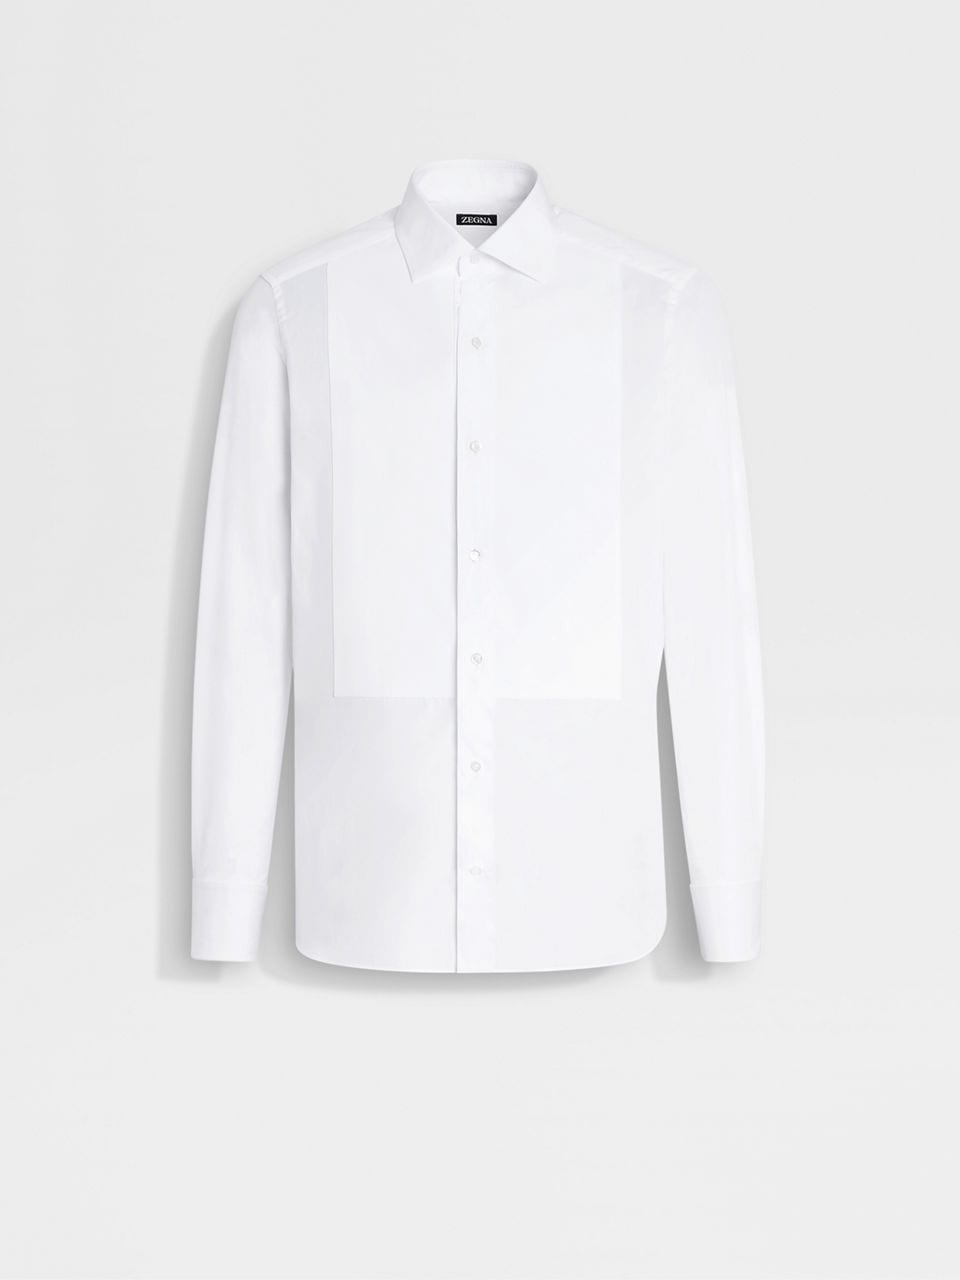 Optical White Cotton Tuxedo Shirt